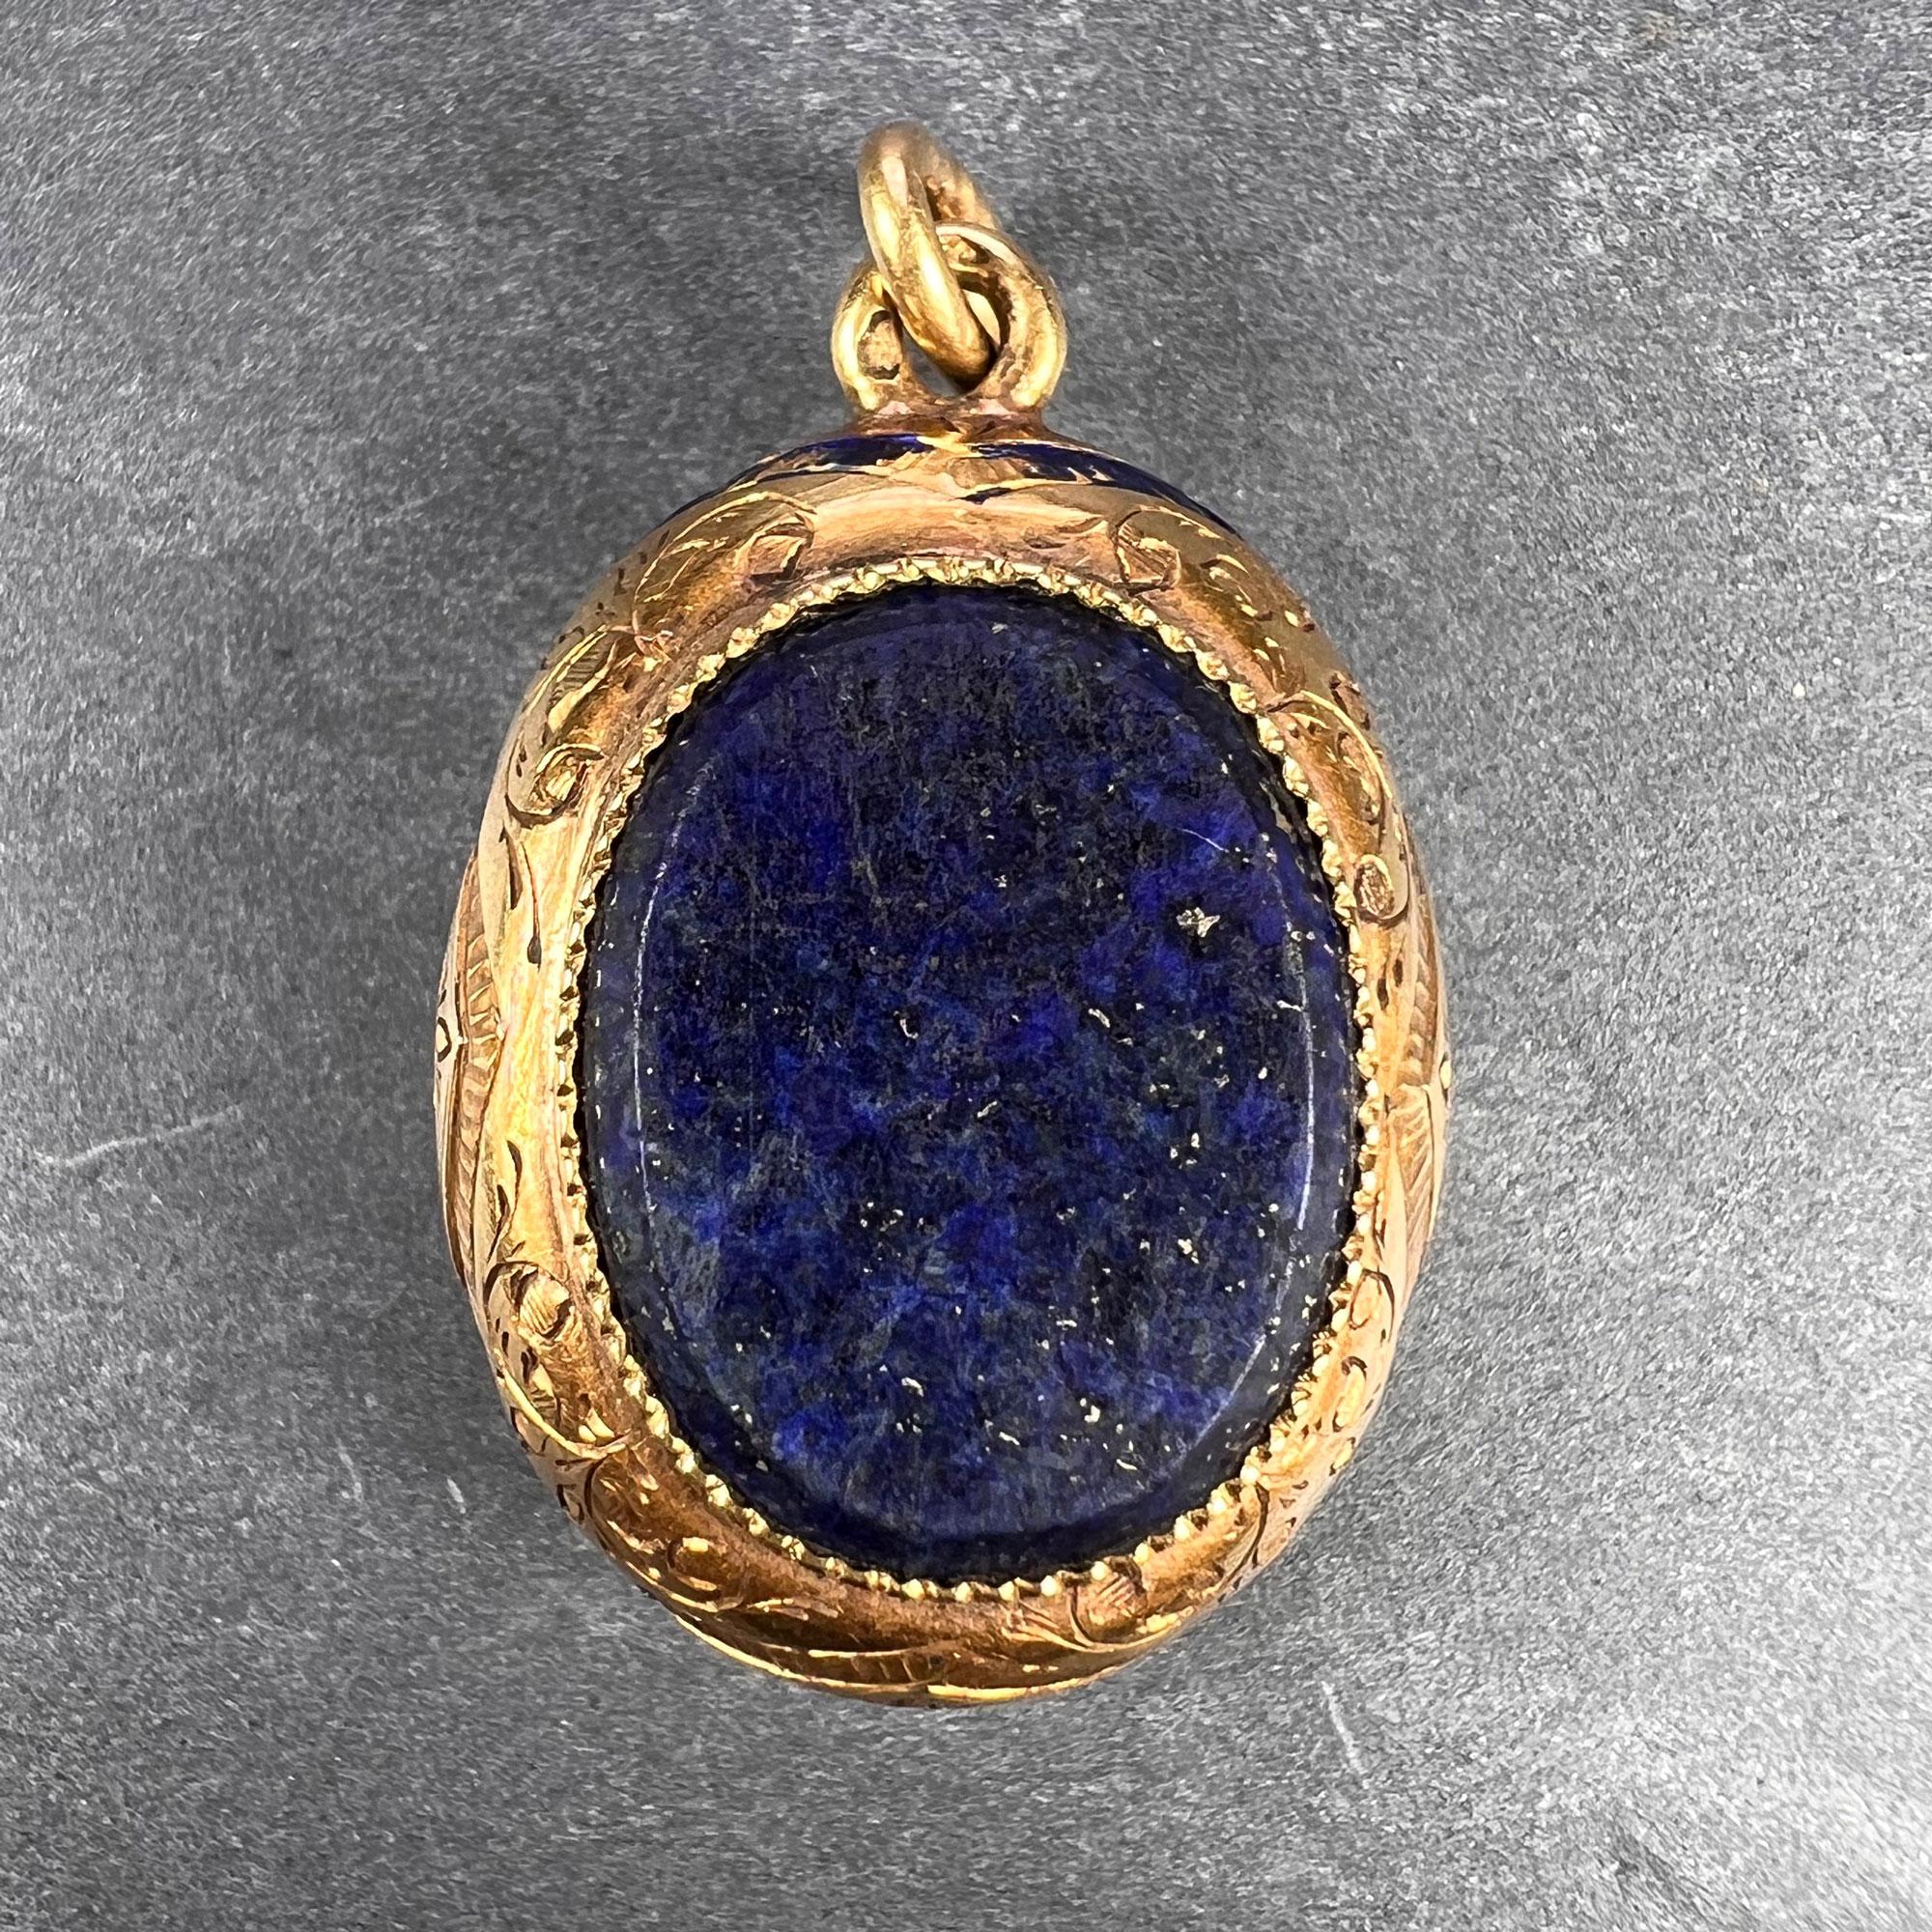 Pendentif de charme en or jaune 18 carats (18K) de fabrication française, conçu comme un cadre ovale à décor gravé et traces d'émail bleu, serti de chaque côté d'une tablette ovale en lapis-lazuli. Estampillé de la marque de l'aigle pour l'or 18